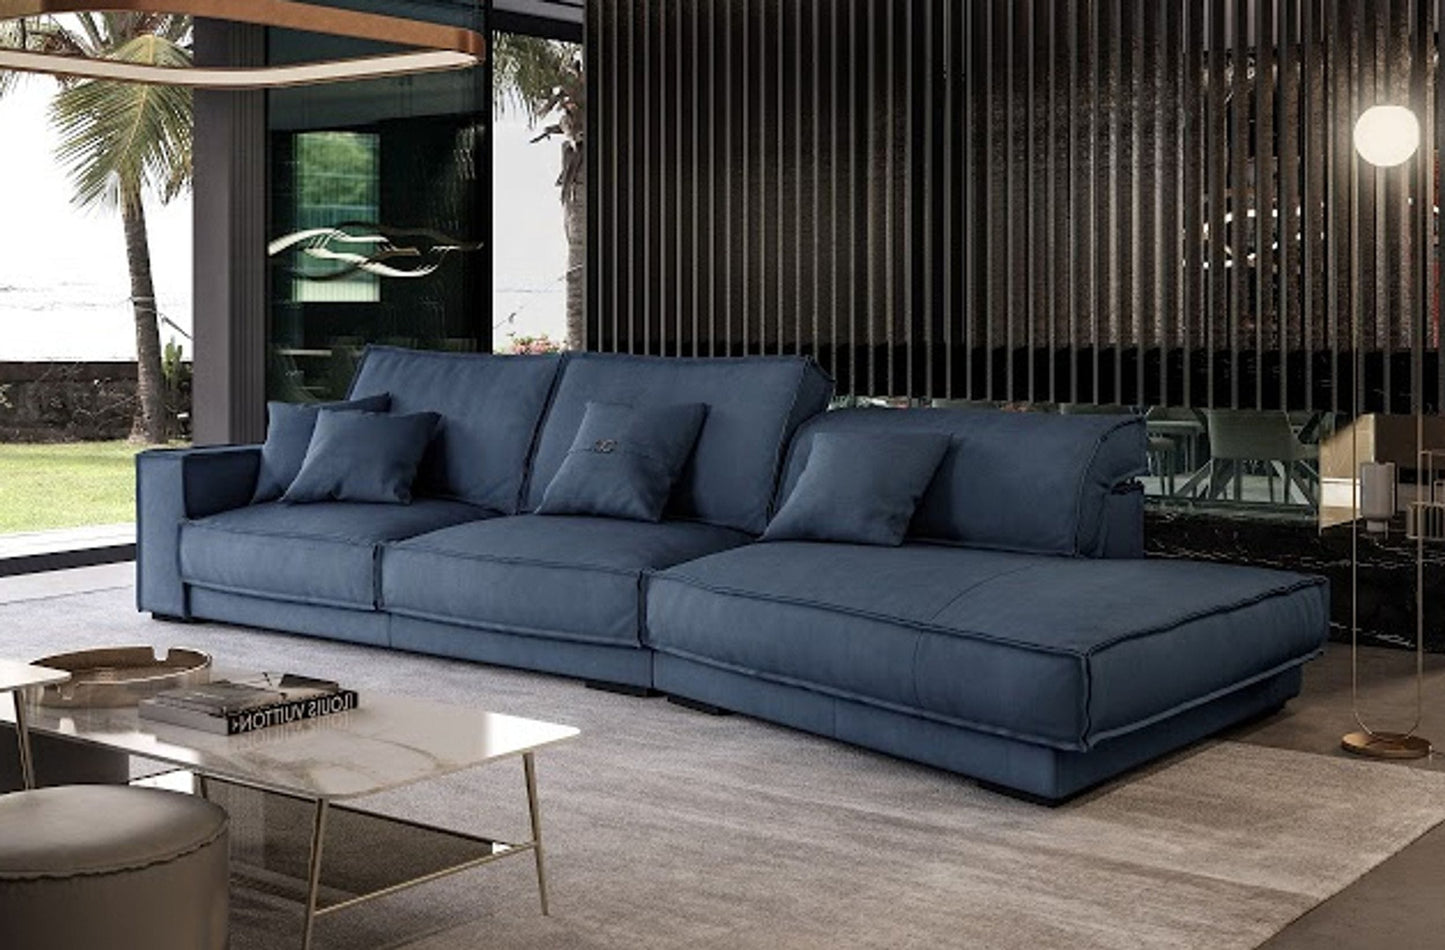 Coronelli Collezioni Sevilla - Italian Contemporary Blue Leather Right Facing Sectional Sofa